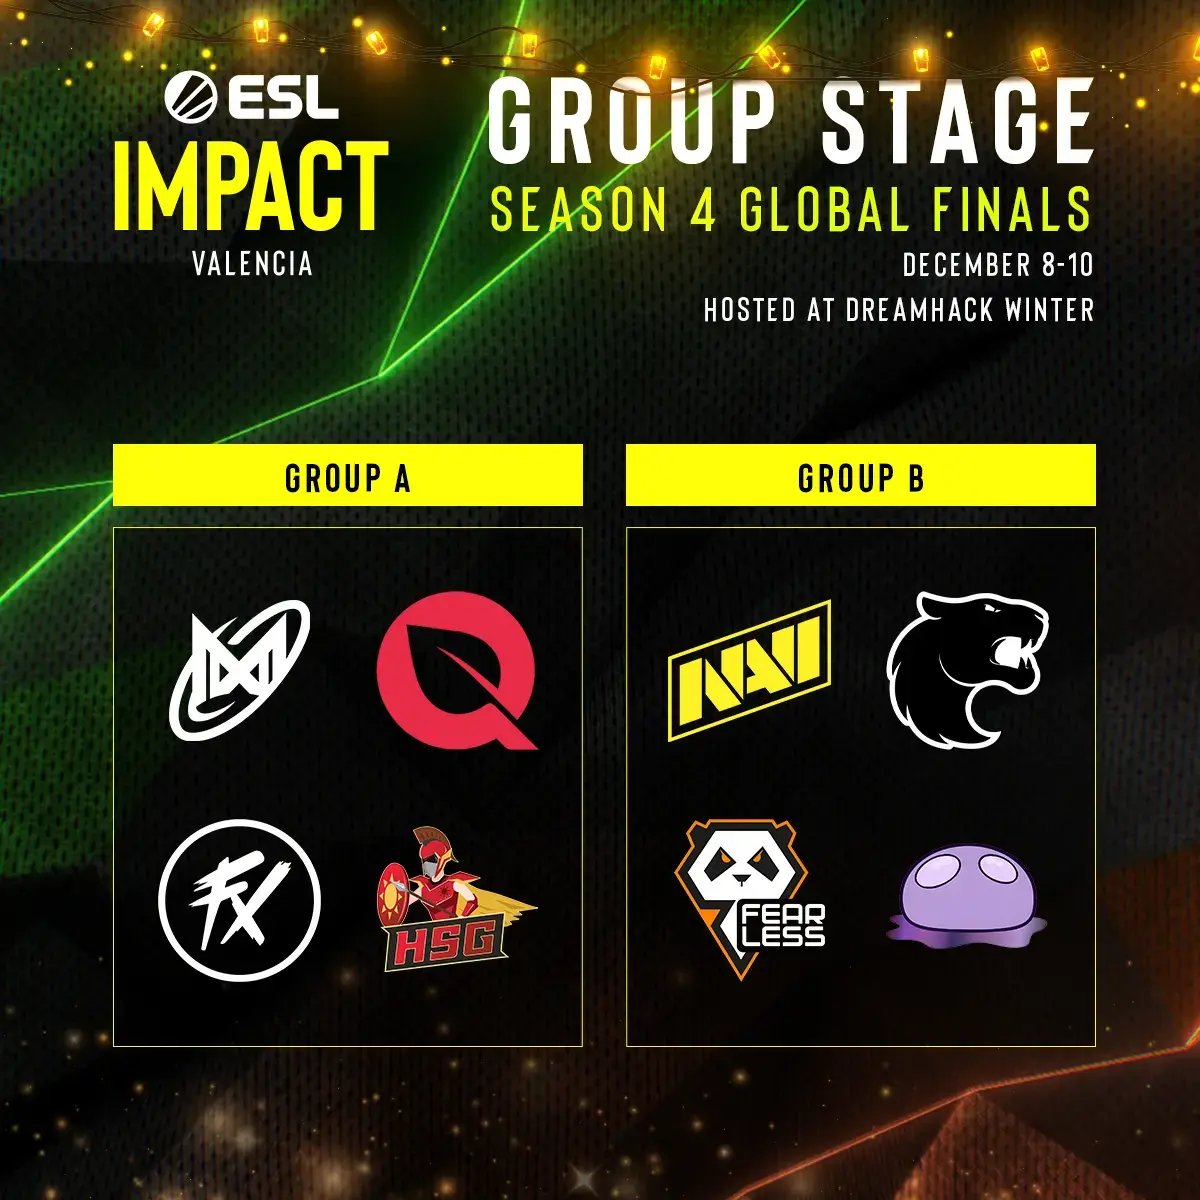 ESL Impact League Season 4 Groups